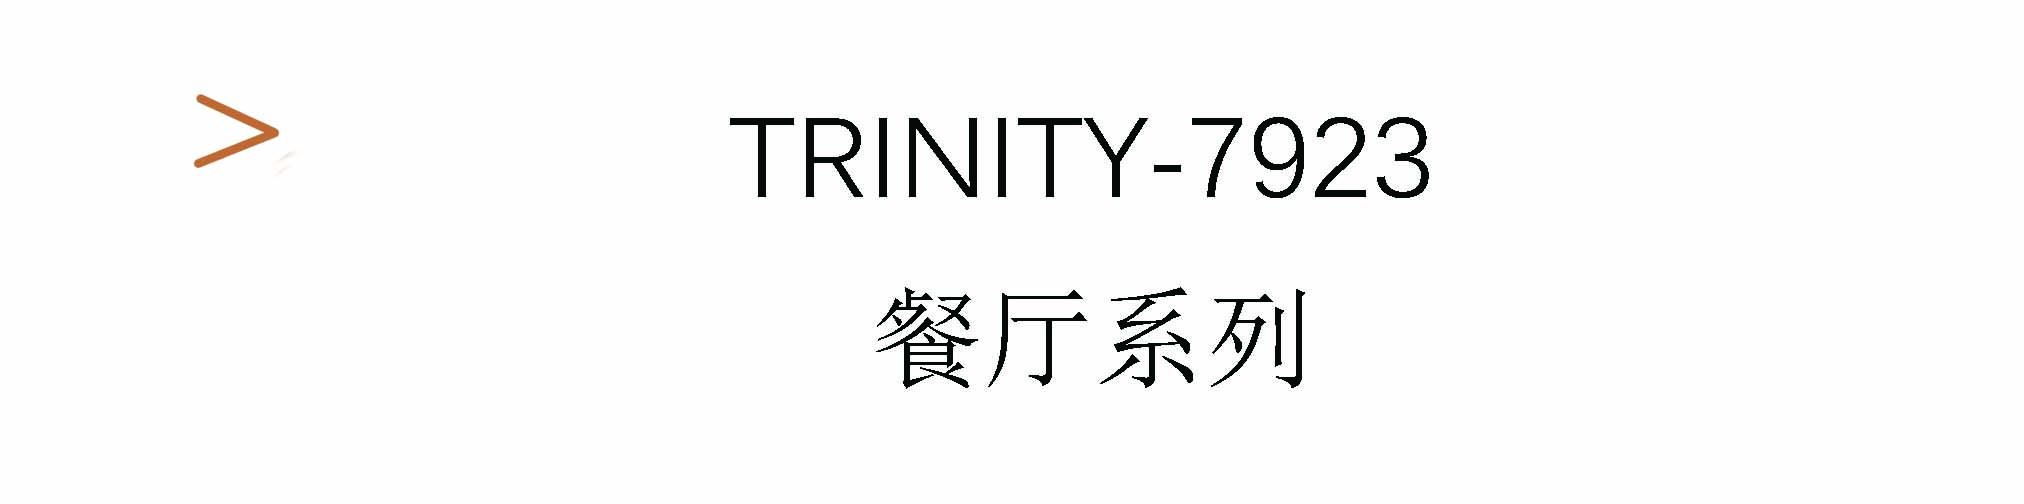 Trinity-7923